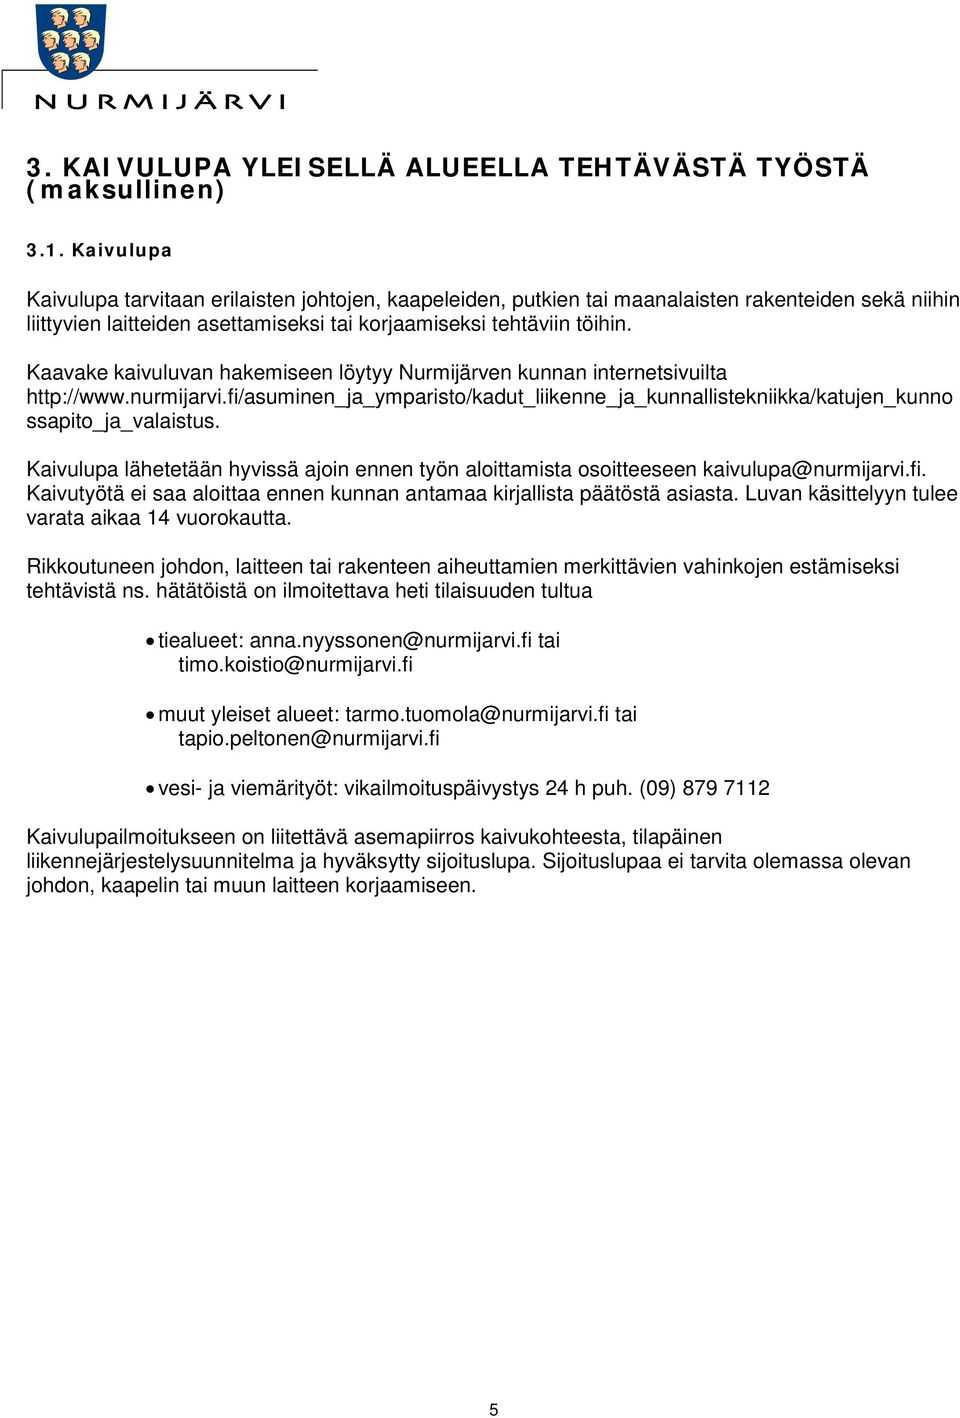 Kaavake kaivuluvan hakemiseen löytyy Nurmijärven kunnan internetsivuilta http://www.nurmijarvi.fi/asuminen_ja_ymparisto/kadut_liikenne_ja_kunnallistekniikka/katujen_kunno ssapito_ja_valaistus.